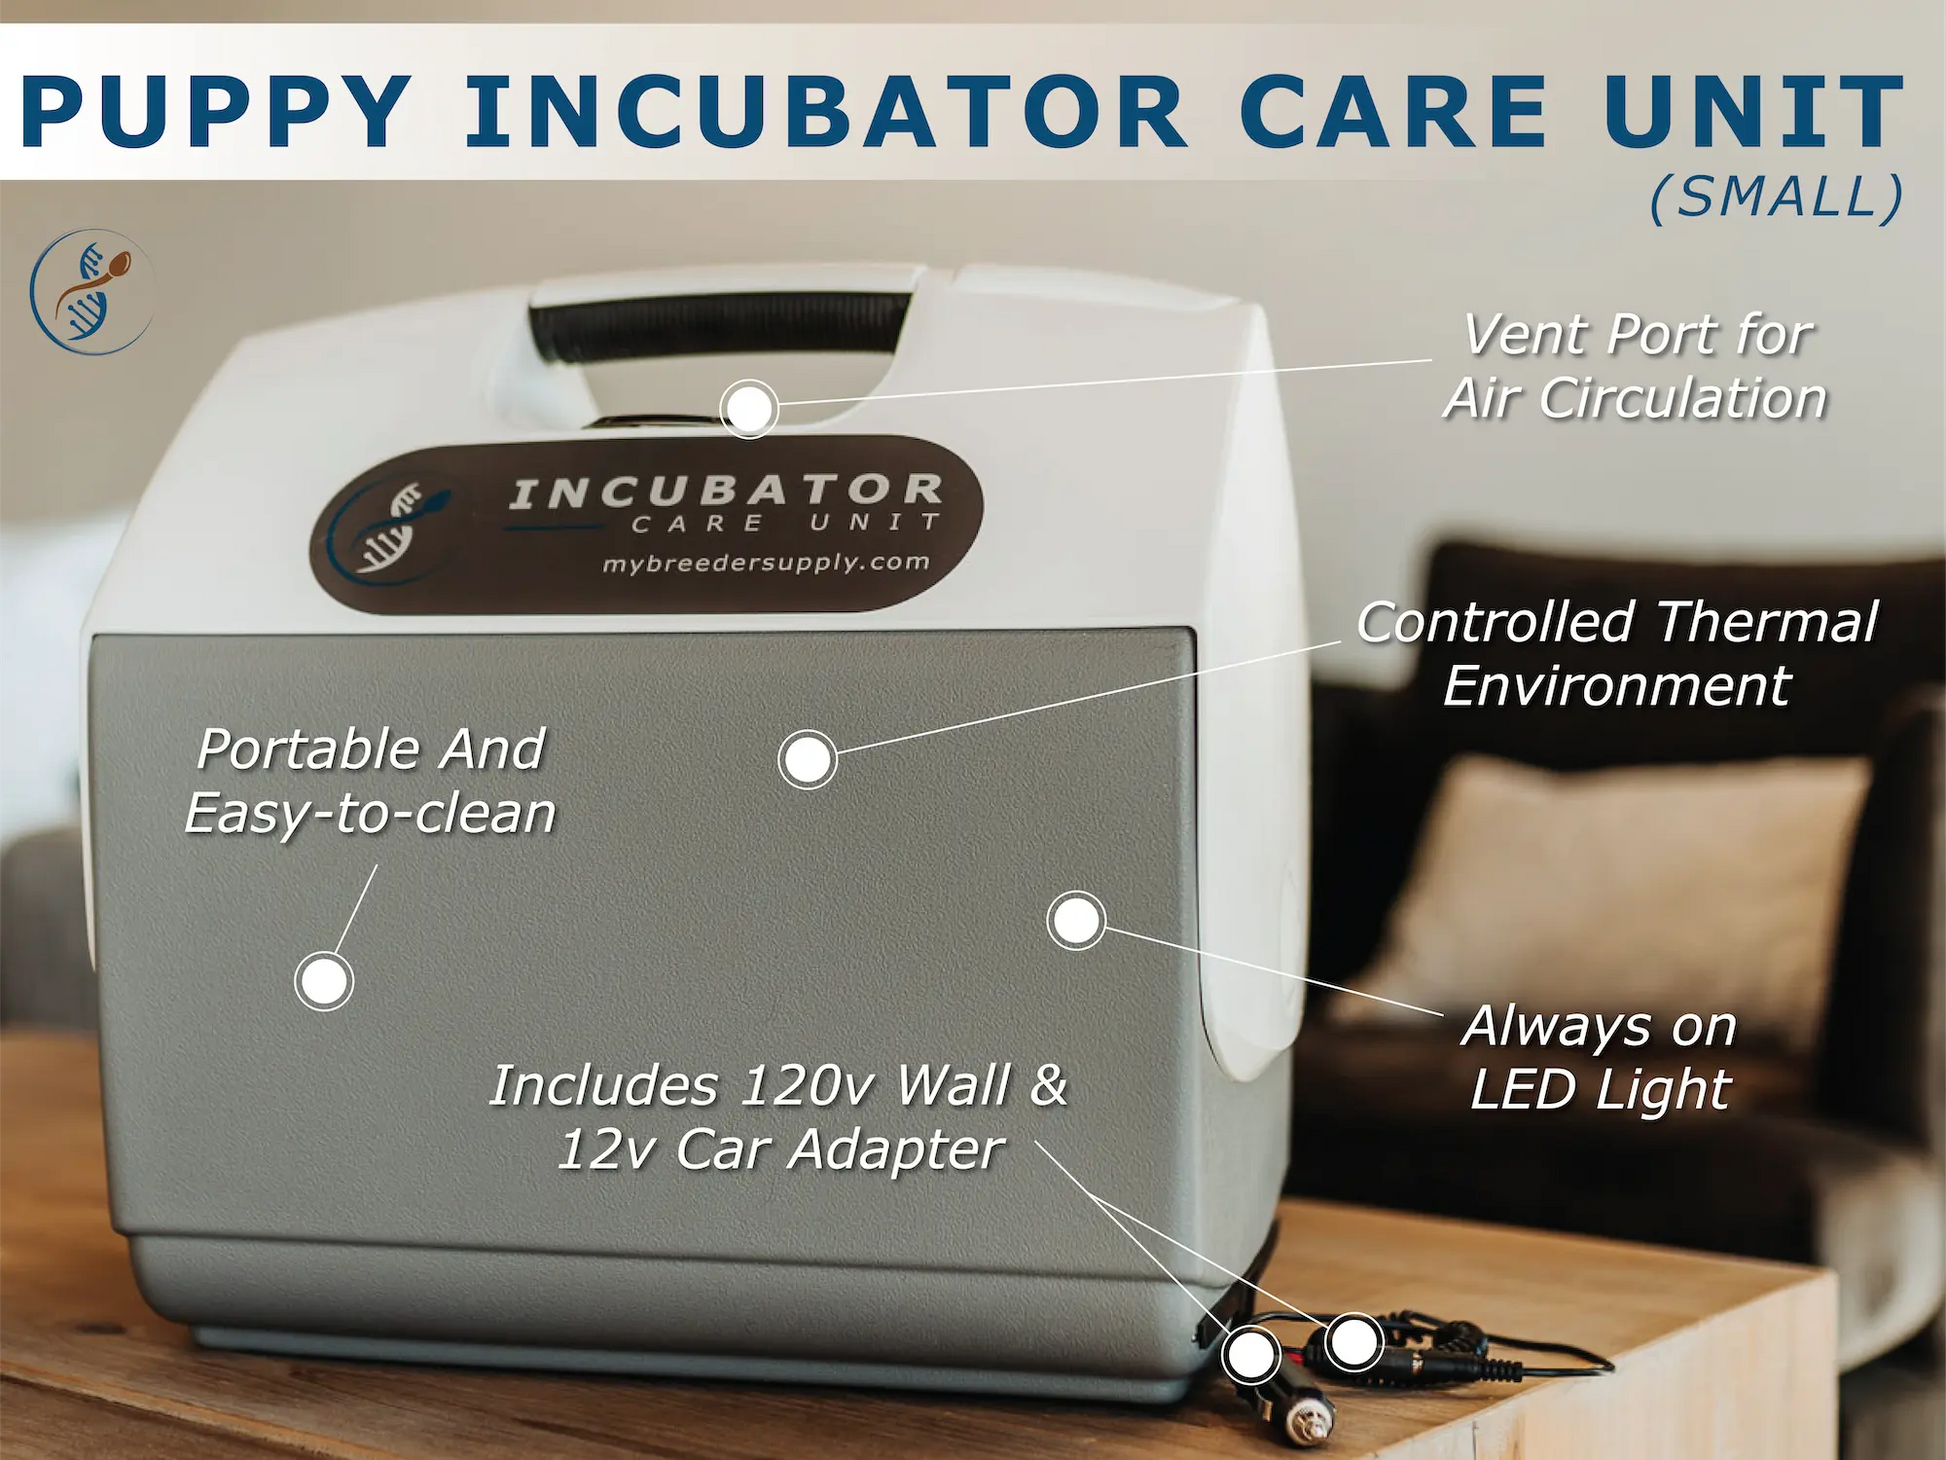 Portable puppy incubator care unit